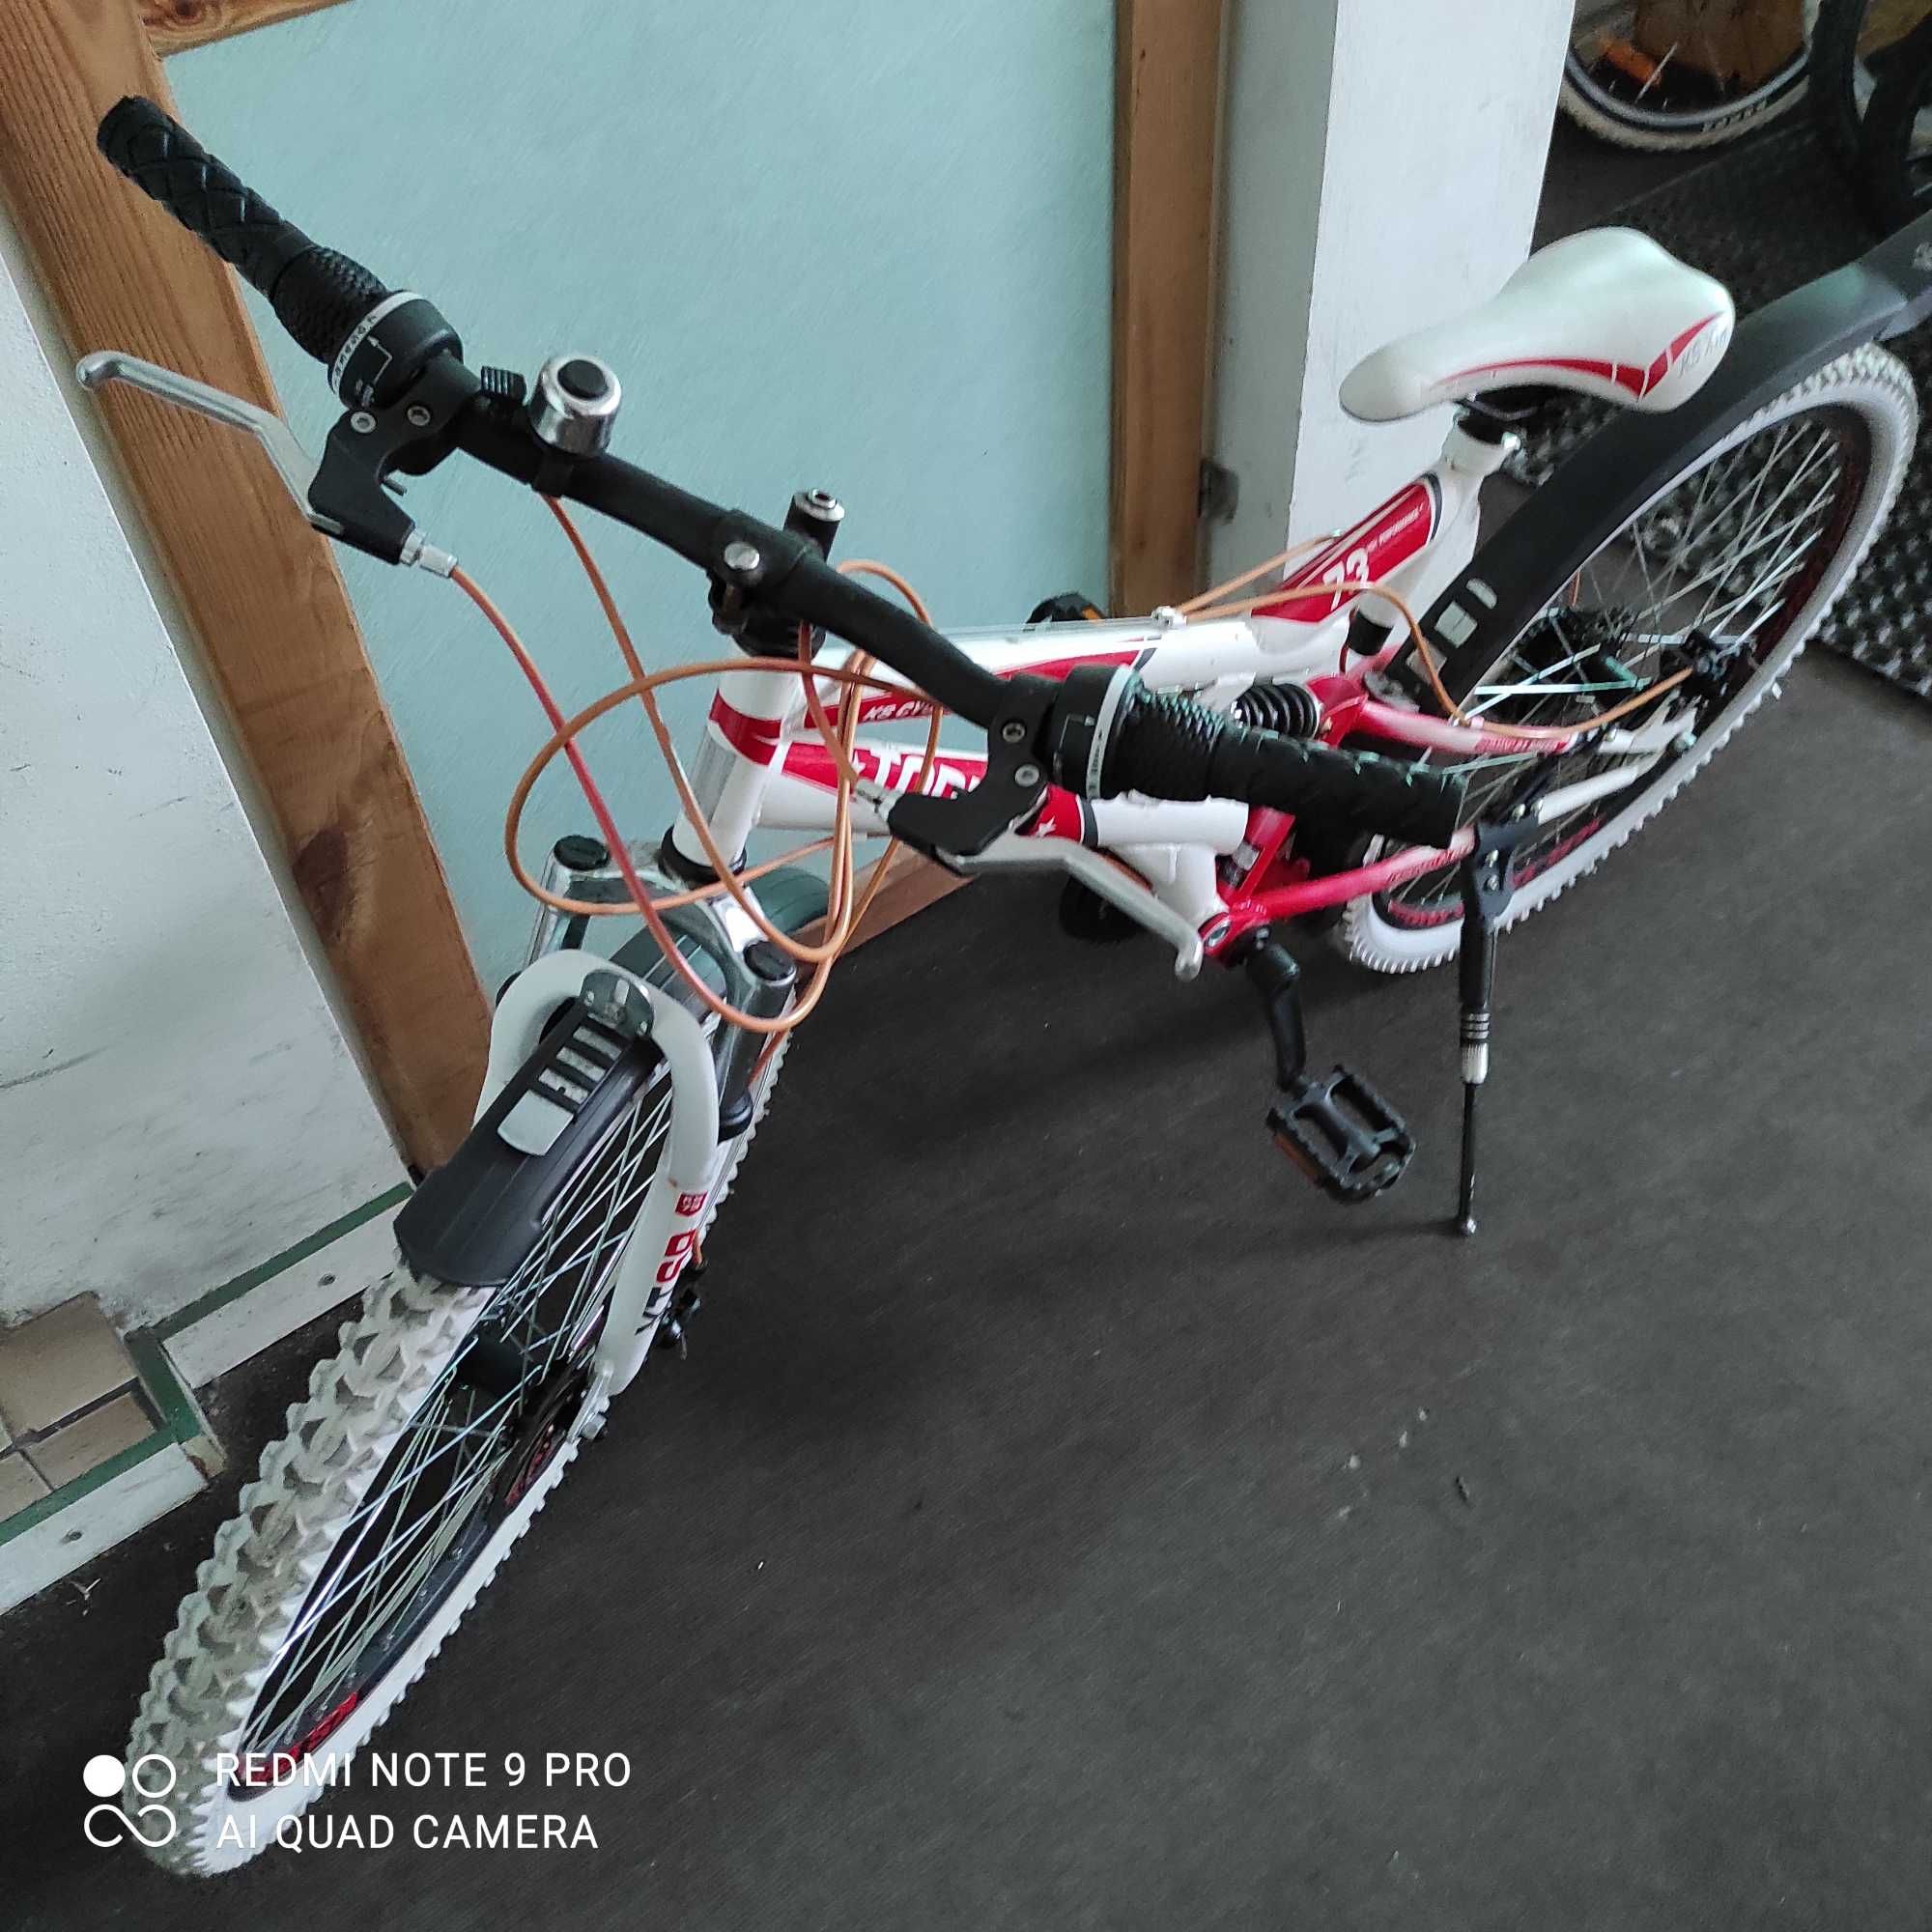 Używany sprawny rower młodzieżowy Topeka gotowy do jazdy